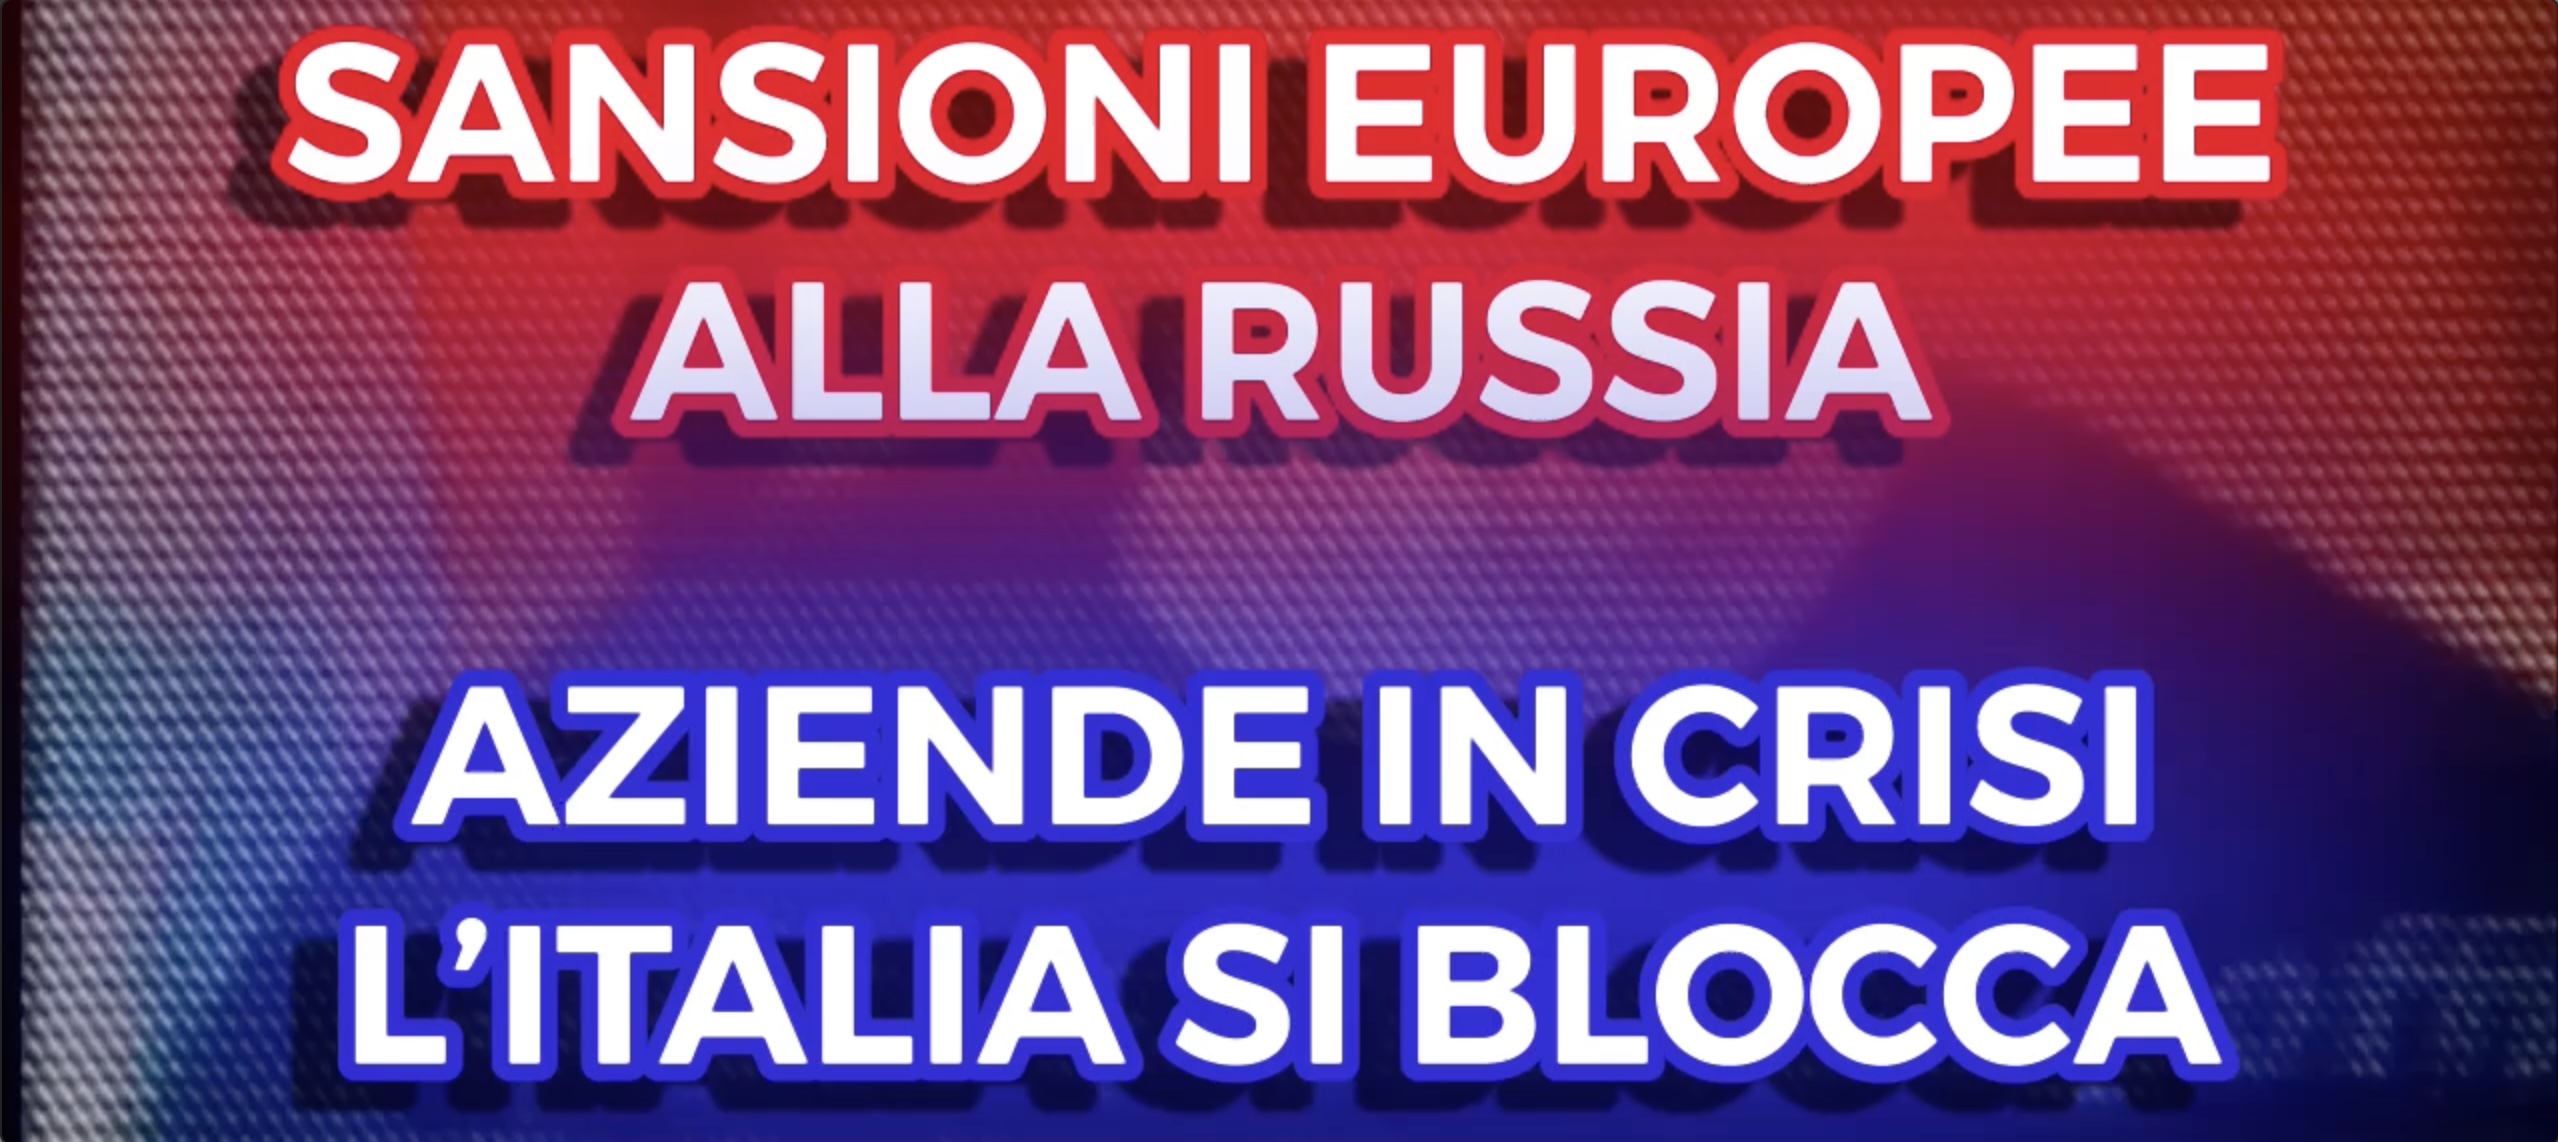 Sansioni Europee alla Russia - Aziende in Crisi, lItalia si Blocca